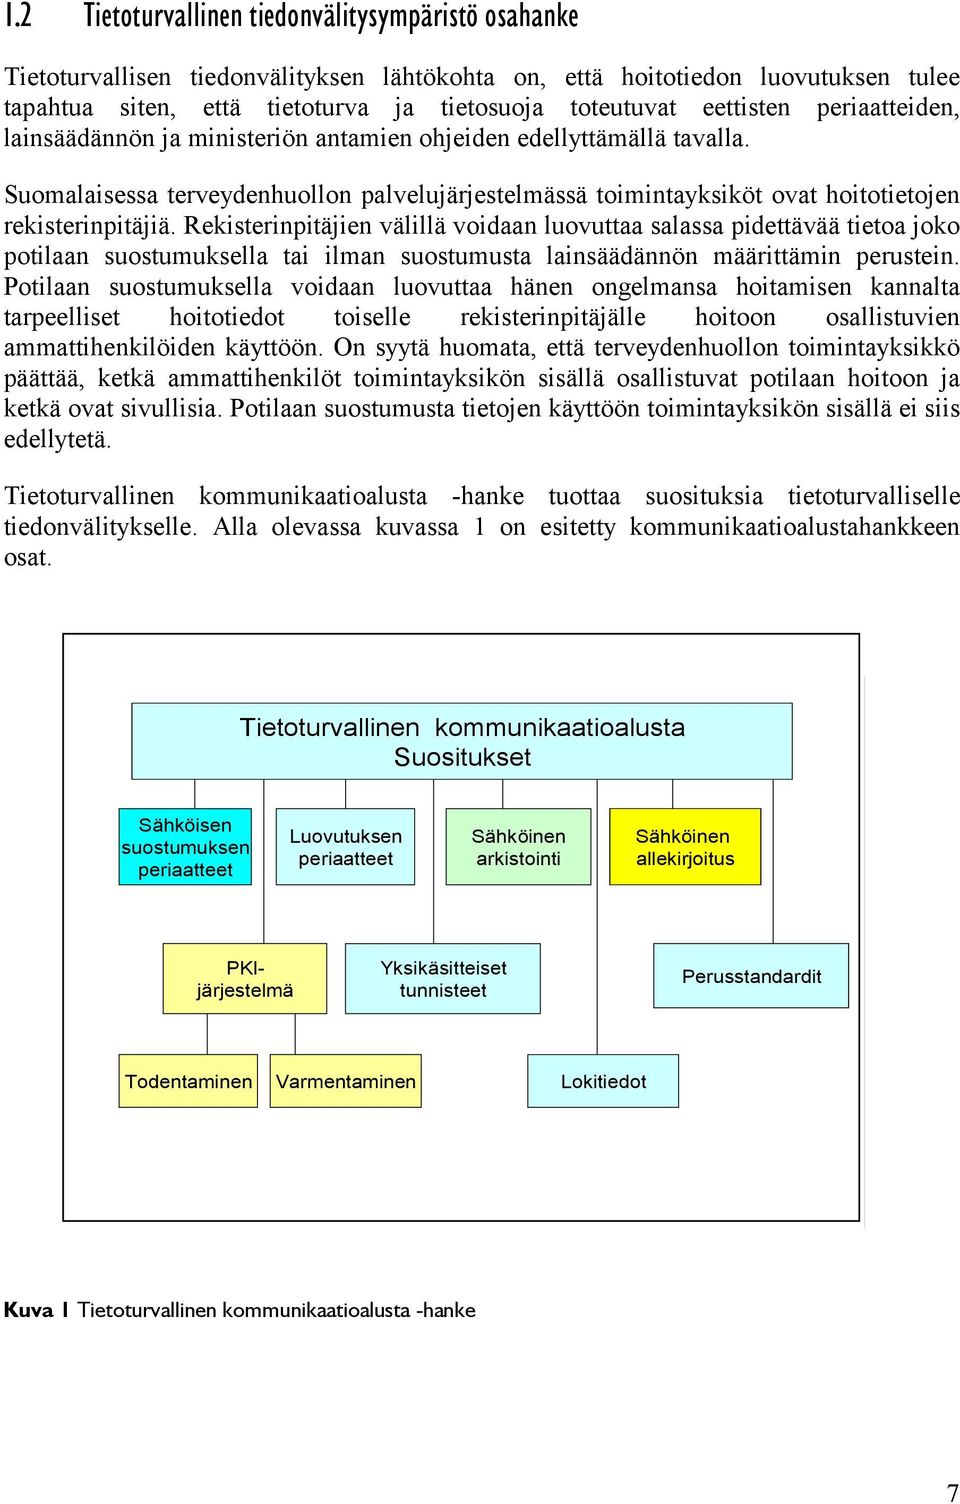 Suomalaisessa terveydenhuollon palvelujärjestelmässä toimintayksiköt ovat hoitotietojen rekisterinpitäjiä.